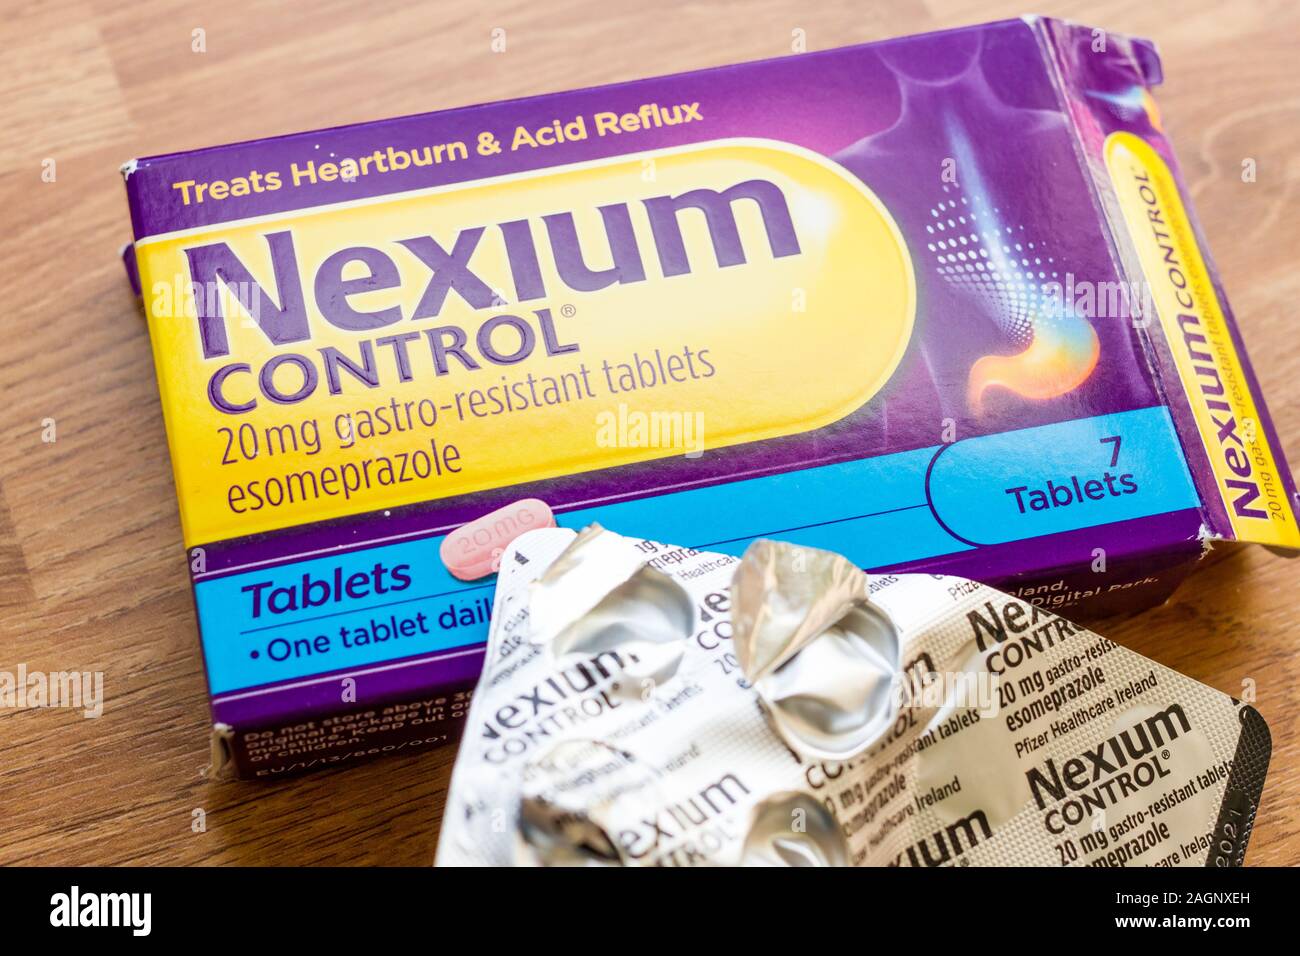 Photographie de Nexium Control Esomeprazole comprimés pour traiter les brûlures d'estomac et le reflux acide Banque D'Images